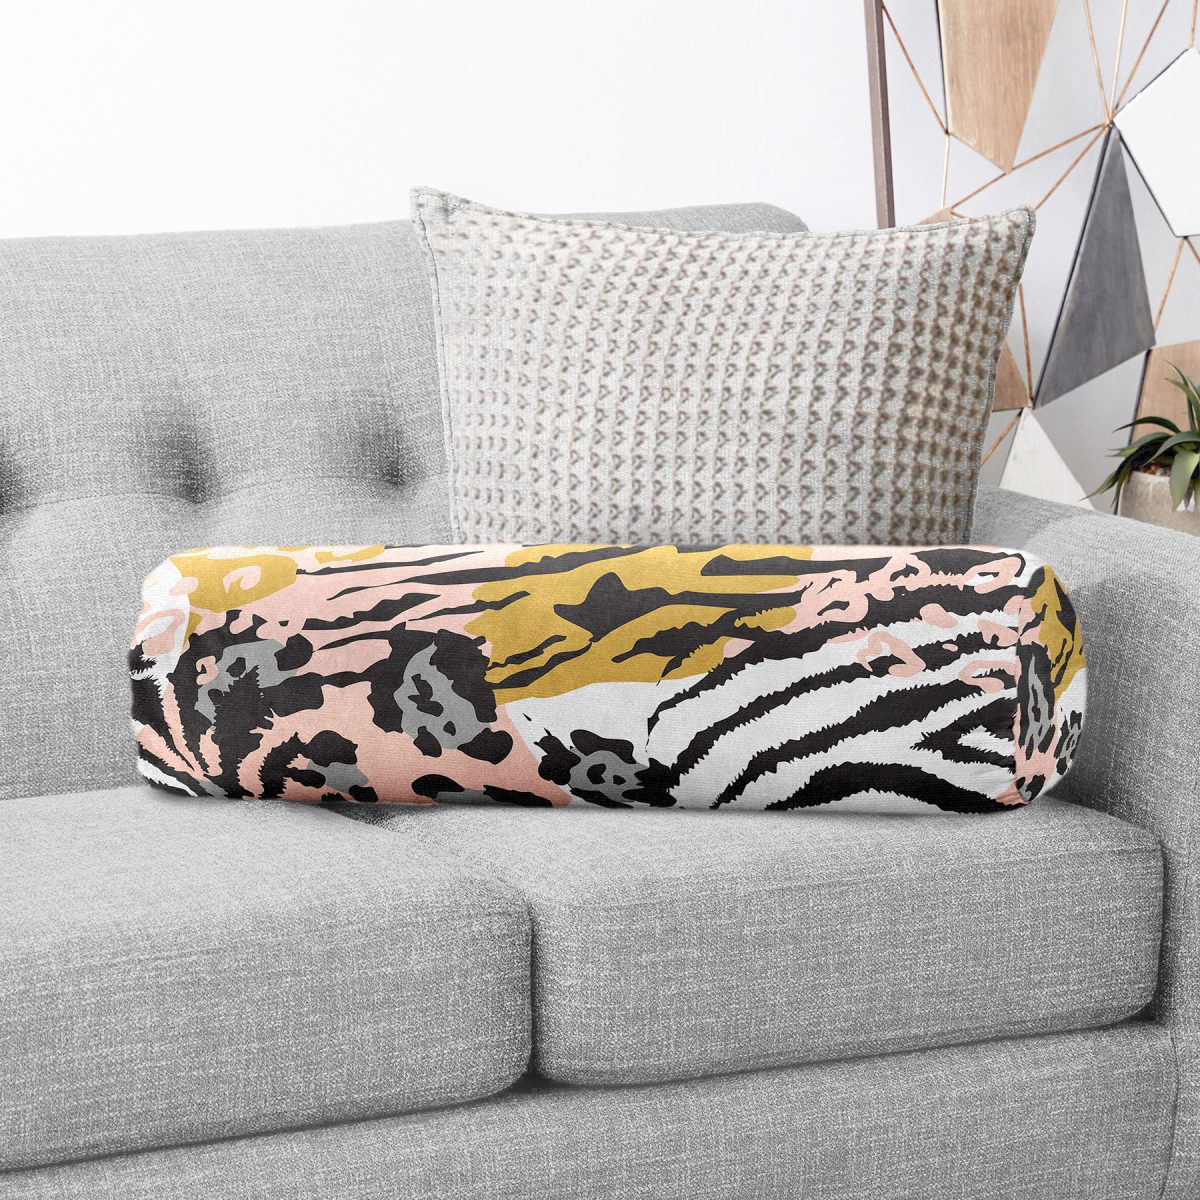 Soft Renkli Özel Tasarım Zebra Motifli İç Dolgulu Yumuşak Silindir Form Yastık Kırlent Realhomes